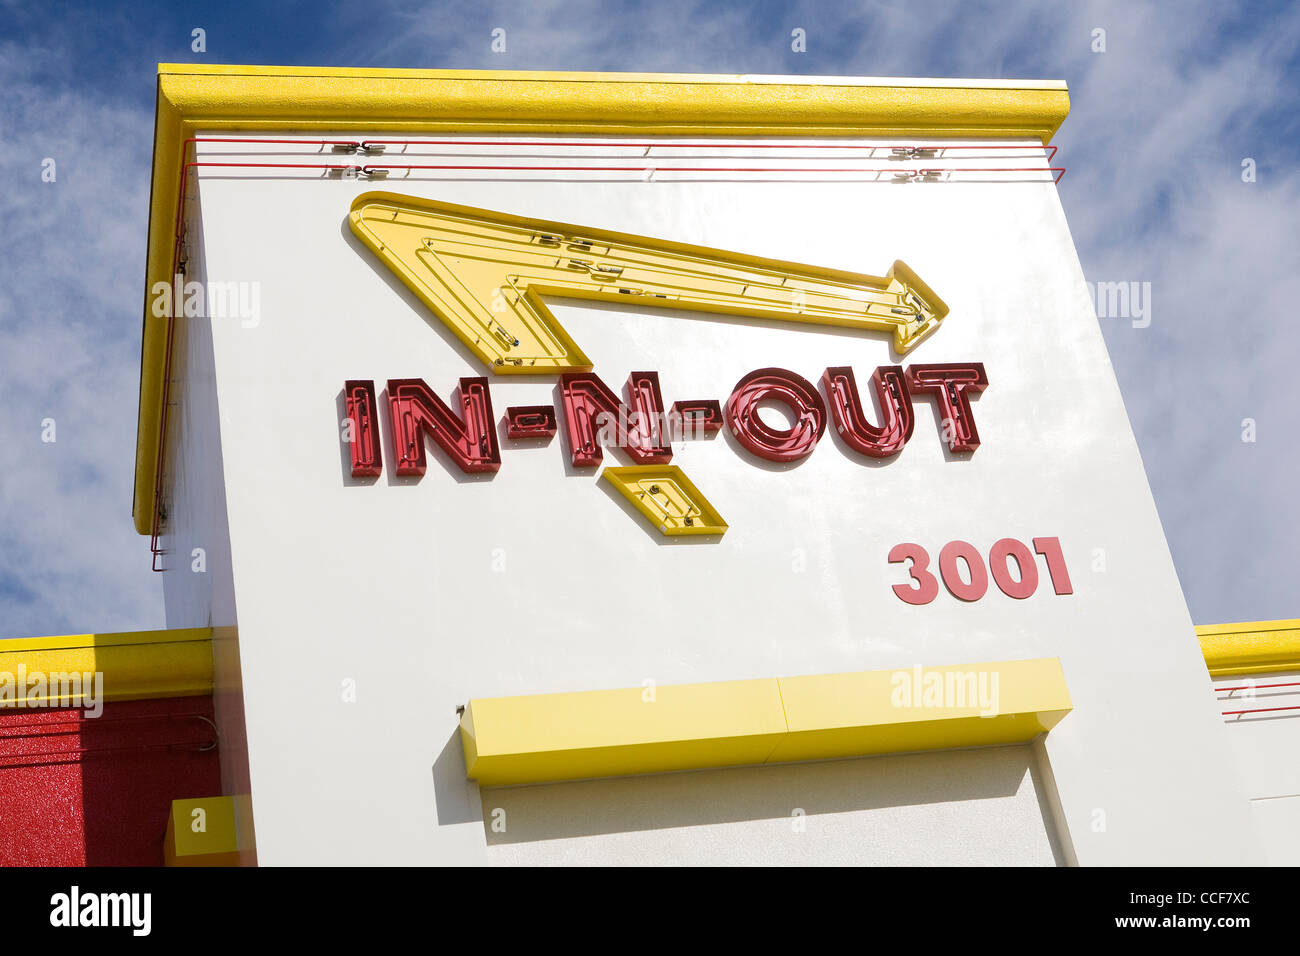 Un En-N-Out Burger restaurante de comida rápida. Foto de stock